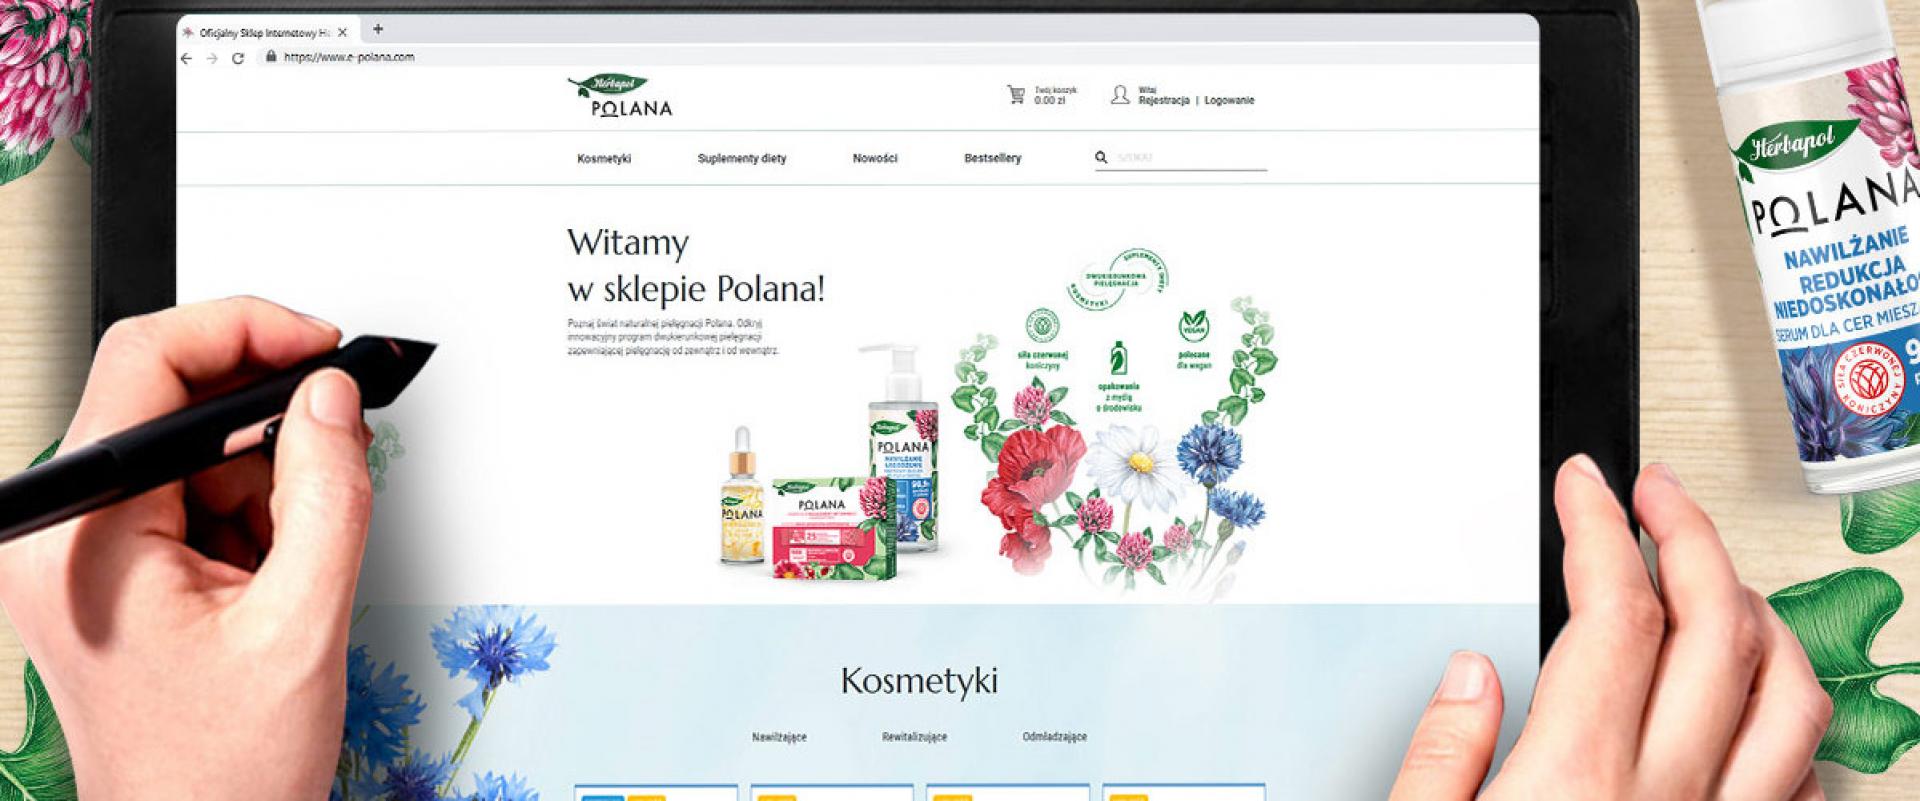 Herbapol-Lublin uruchamia sklep internetowy dla nowej marki kosmetycznej Polana